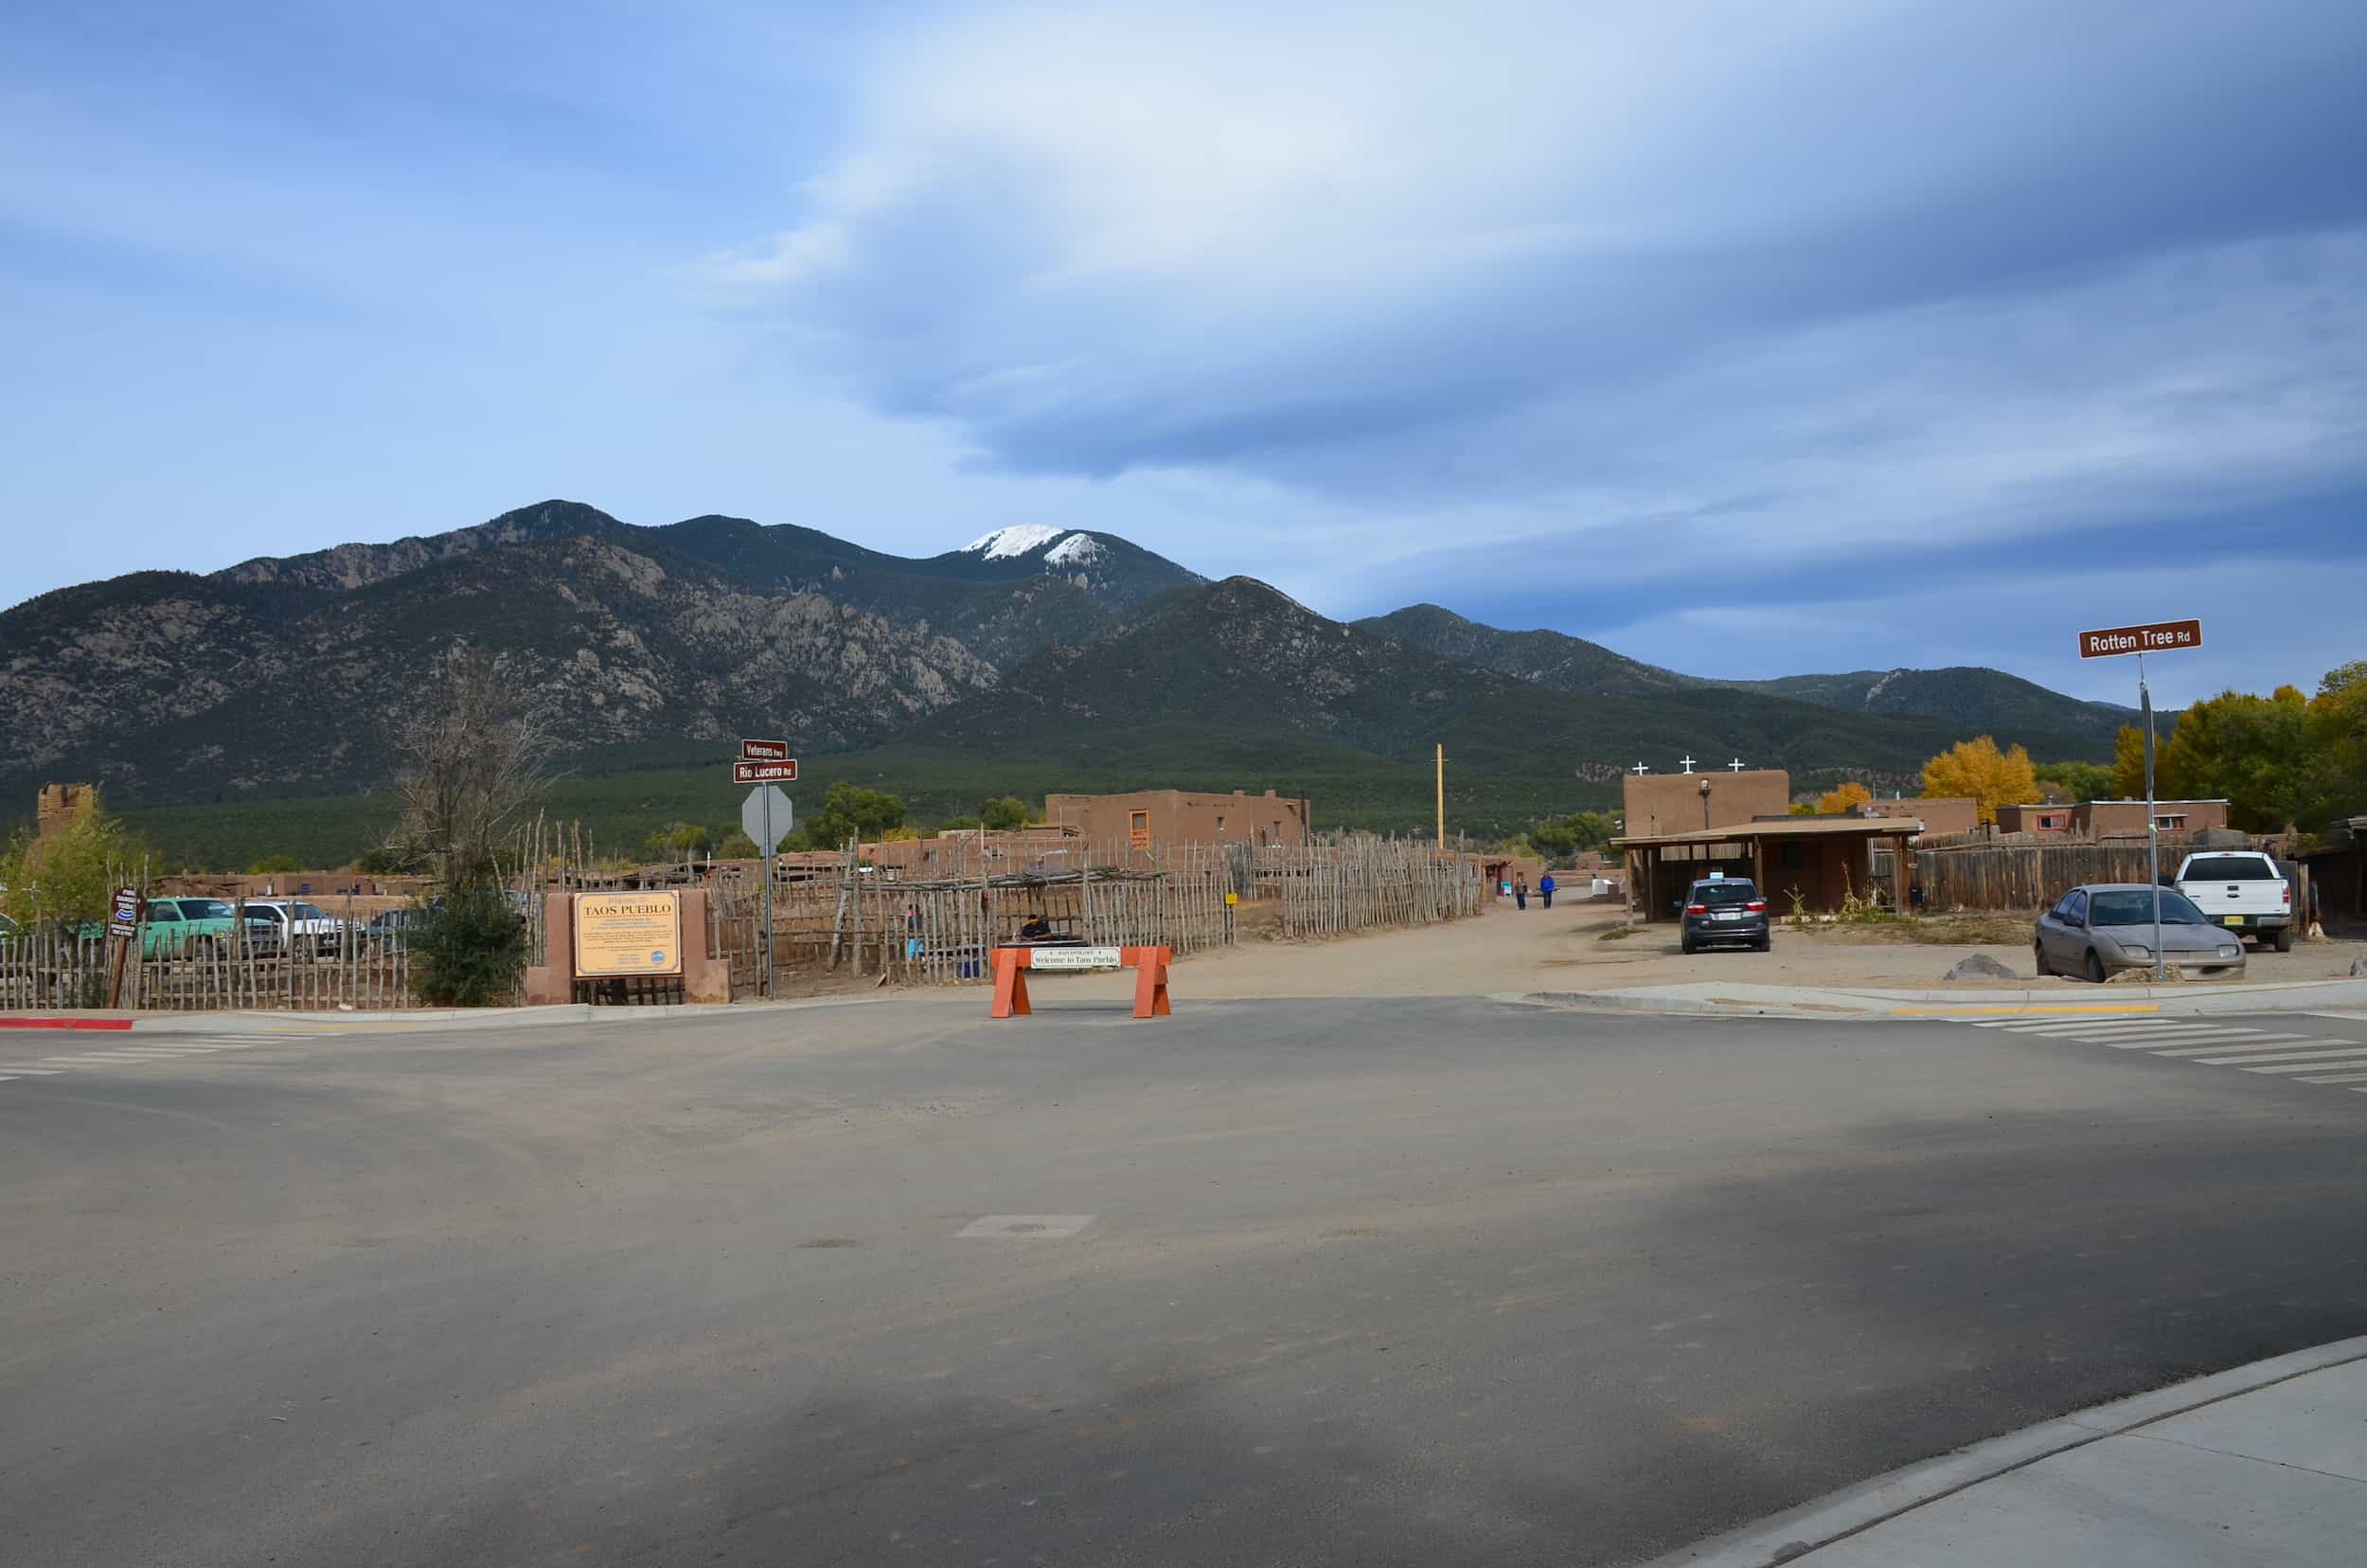 Entrance to Taos Pueblo in Taos, New Mexico